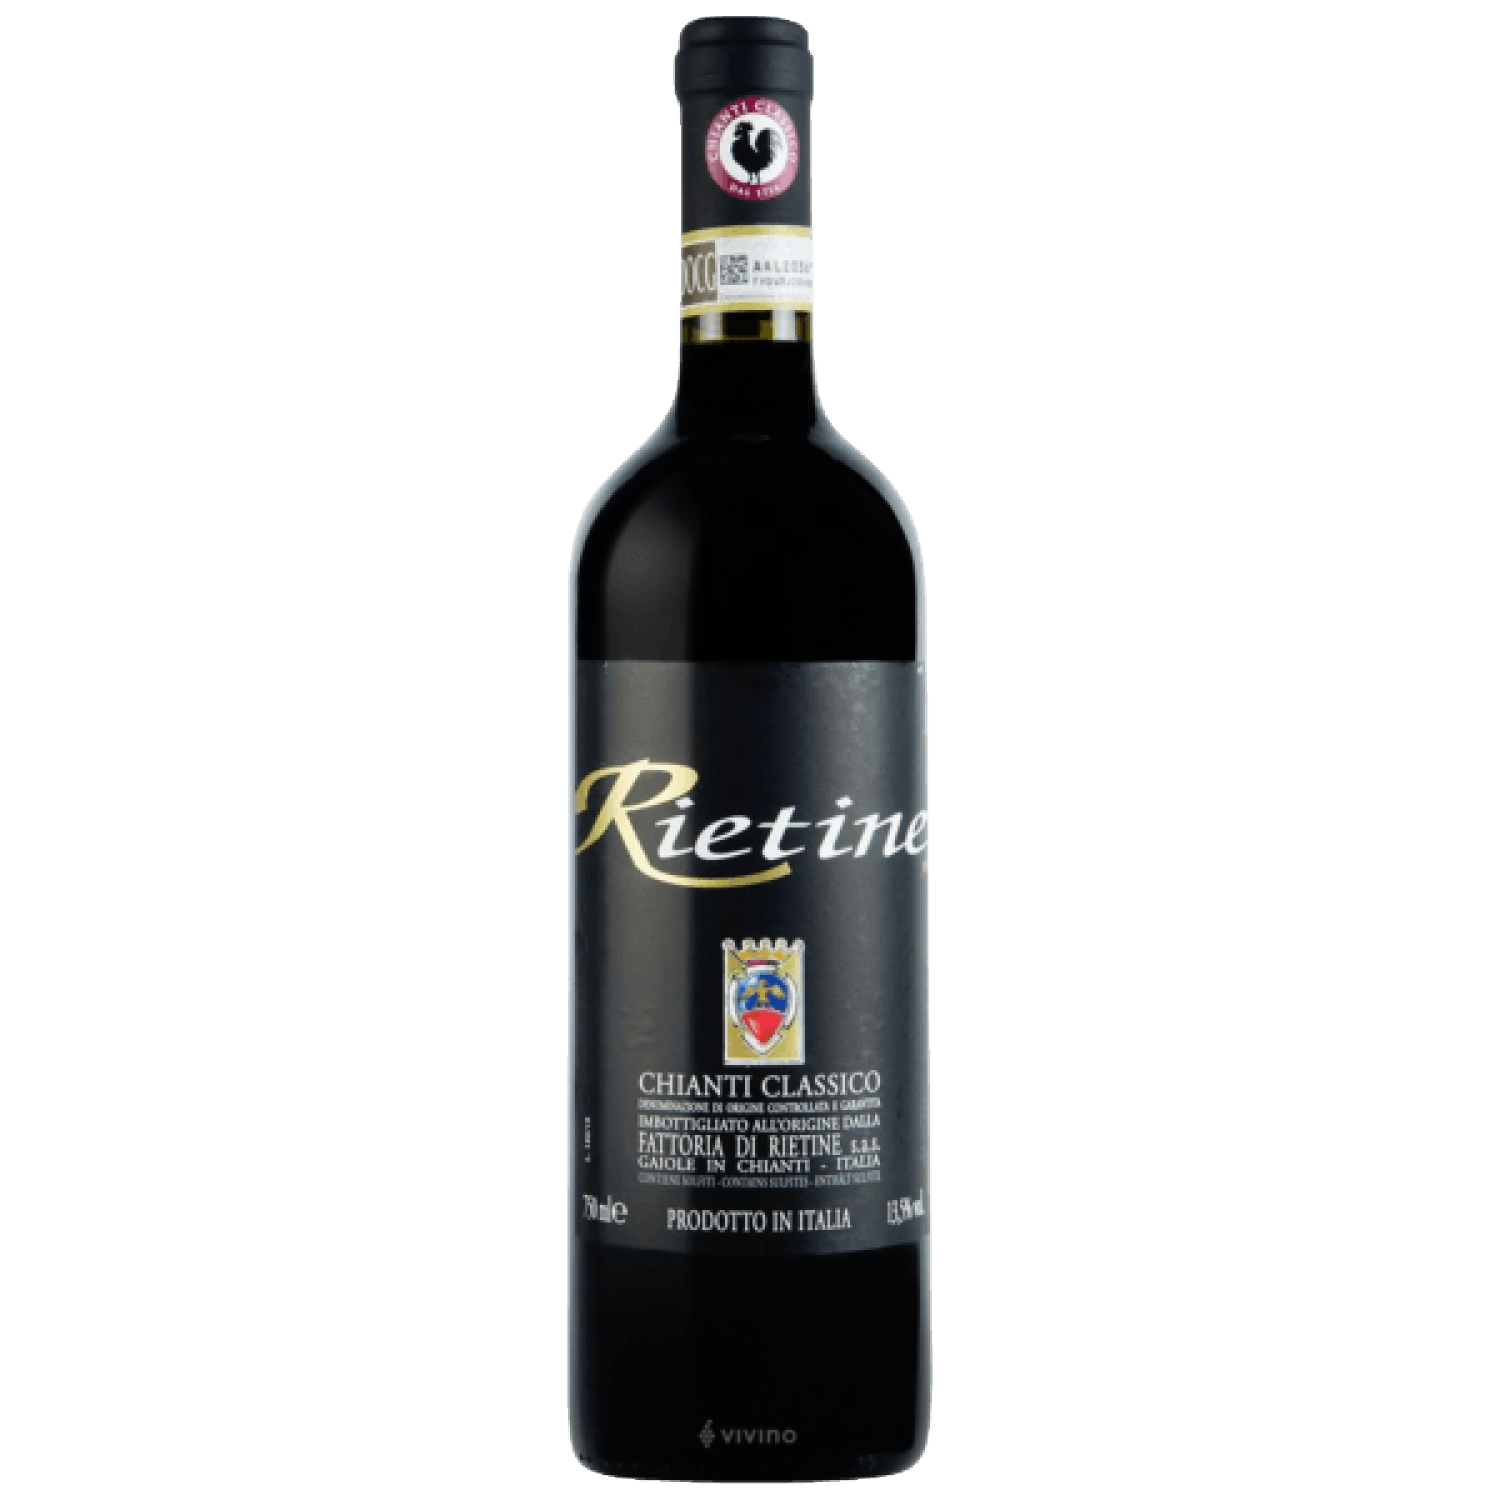 Chianti Classico DOCG Rietine Wein – 2019 und – Kunst